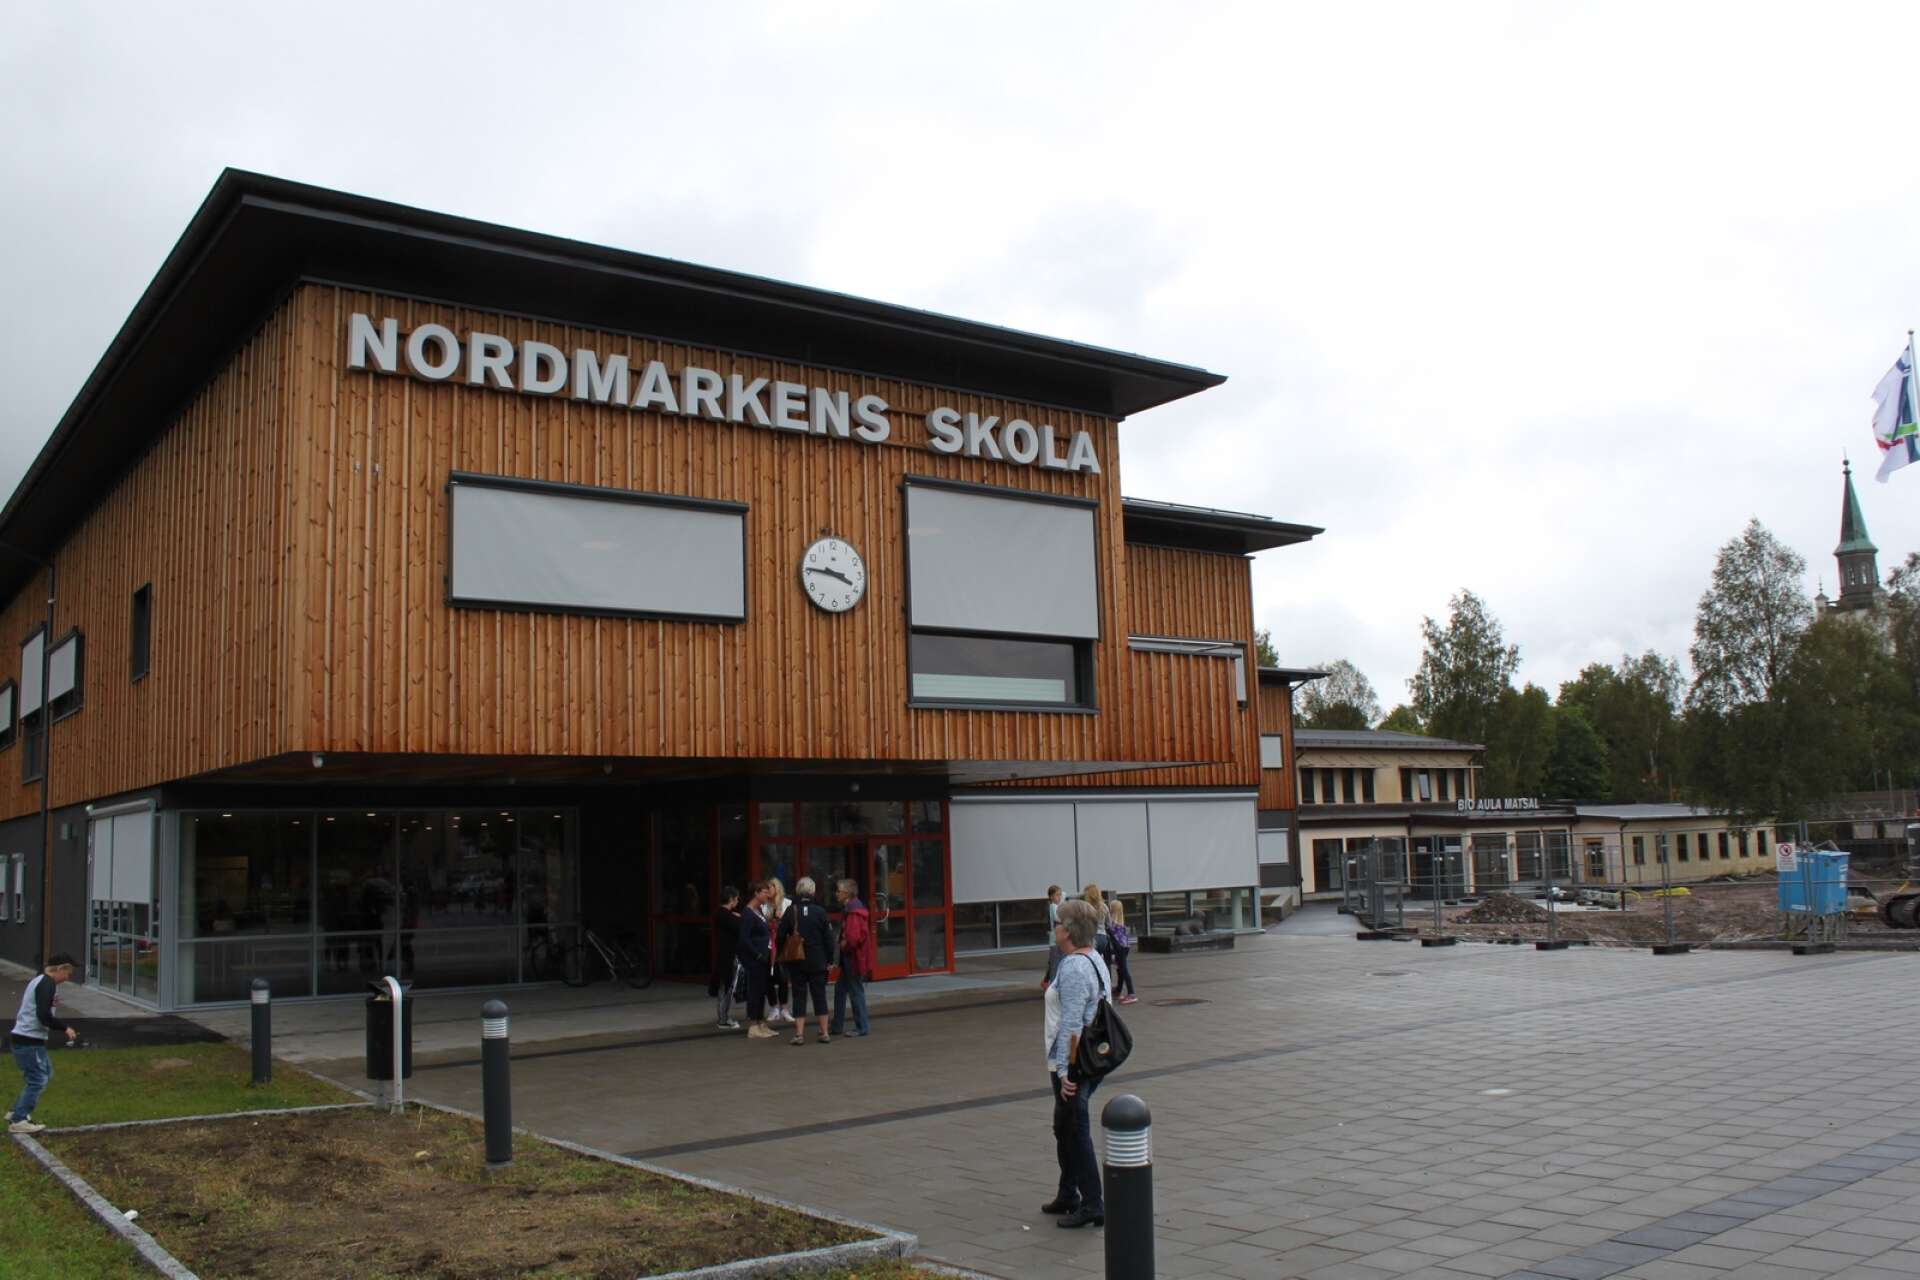  Nordmarkens skola i Årjäng. Arkivbild.